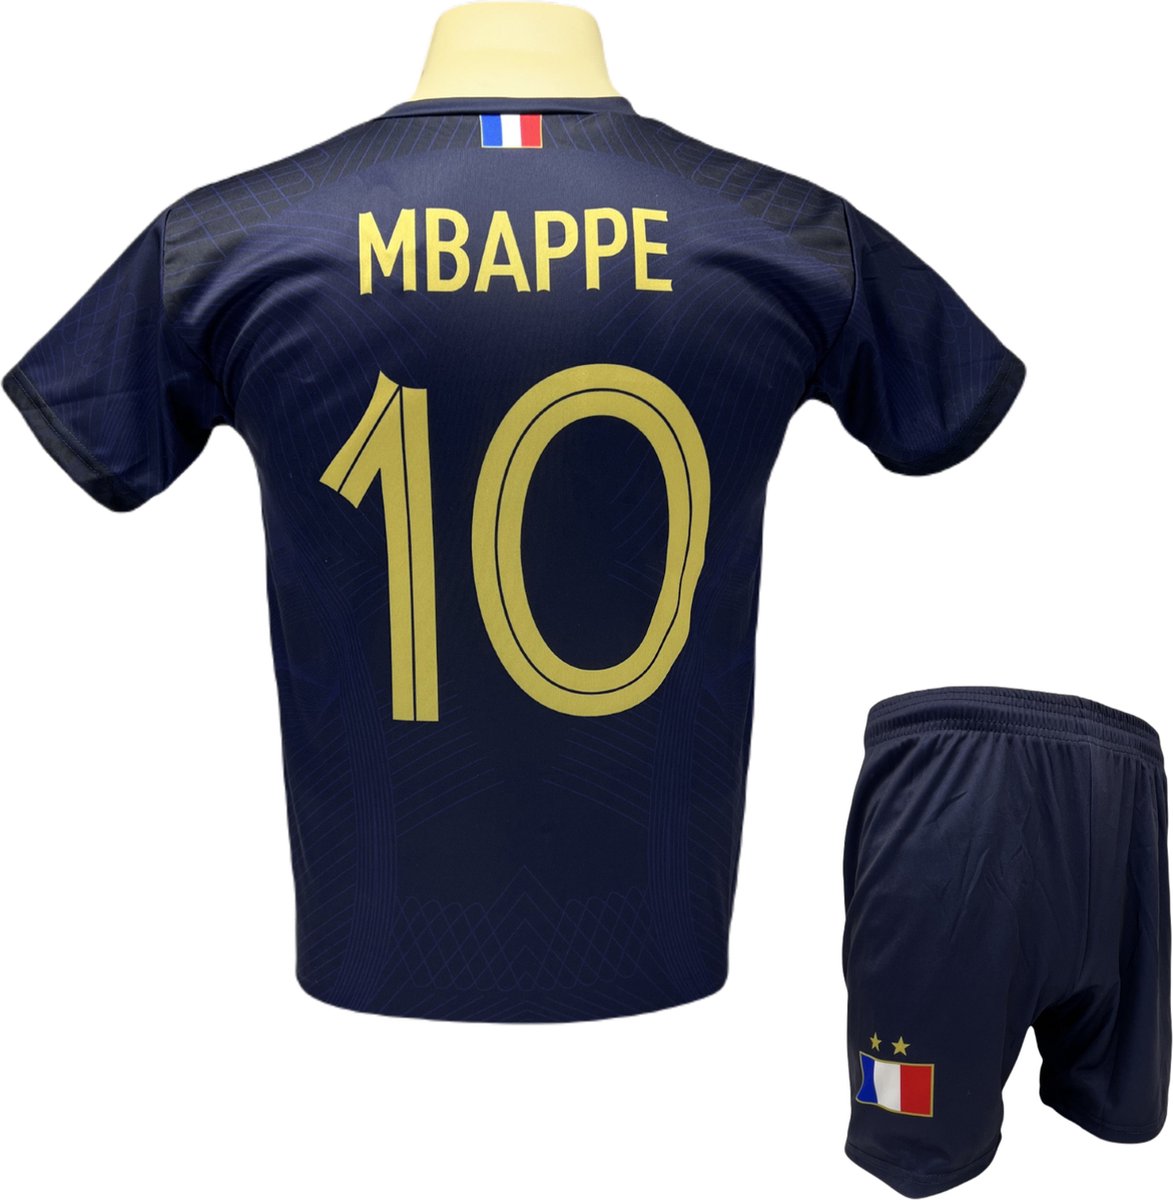 Kylian Mbappé - Frankrijk Thuis Tenue - voetbaltenue - Voetbalshirt + Broek Set - Blauw - Maat: XL